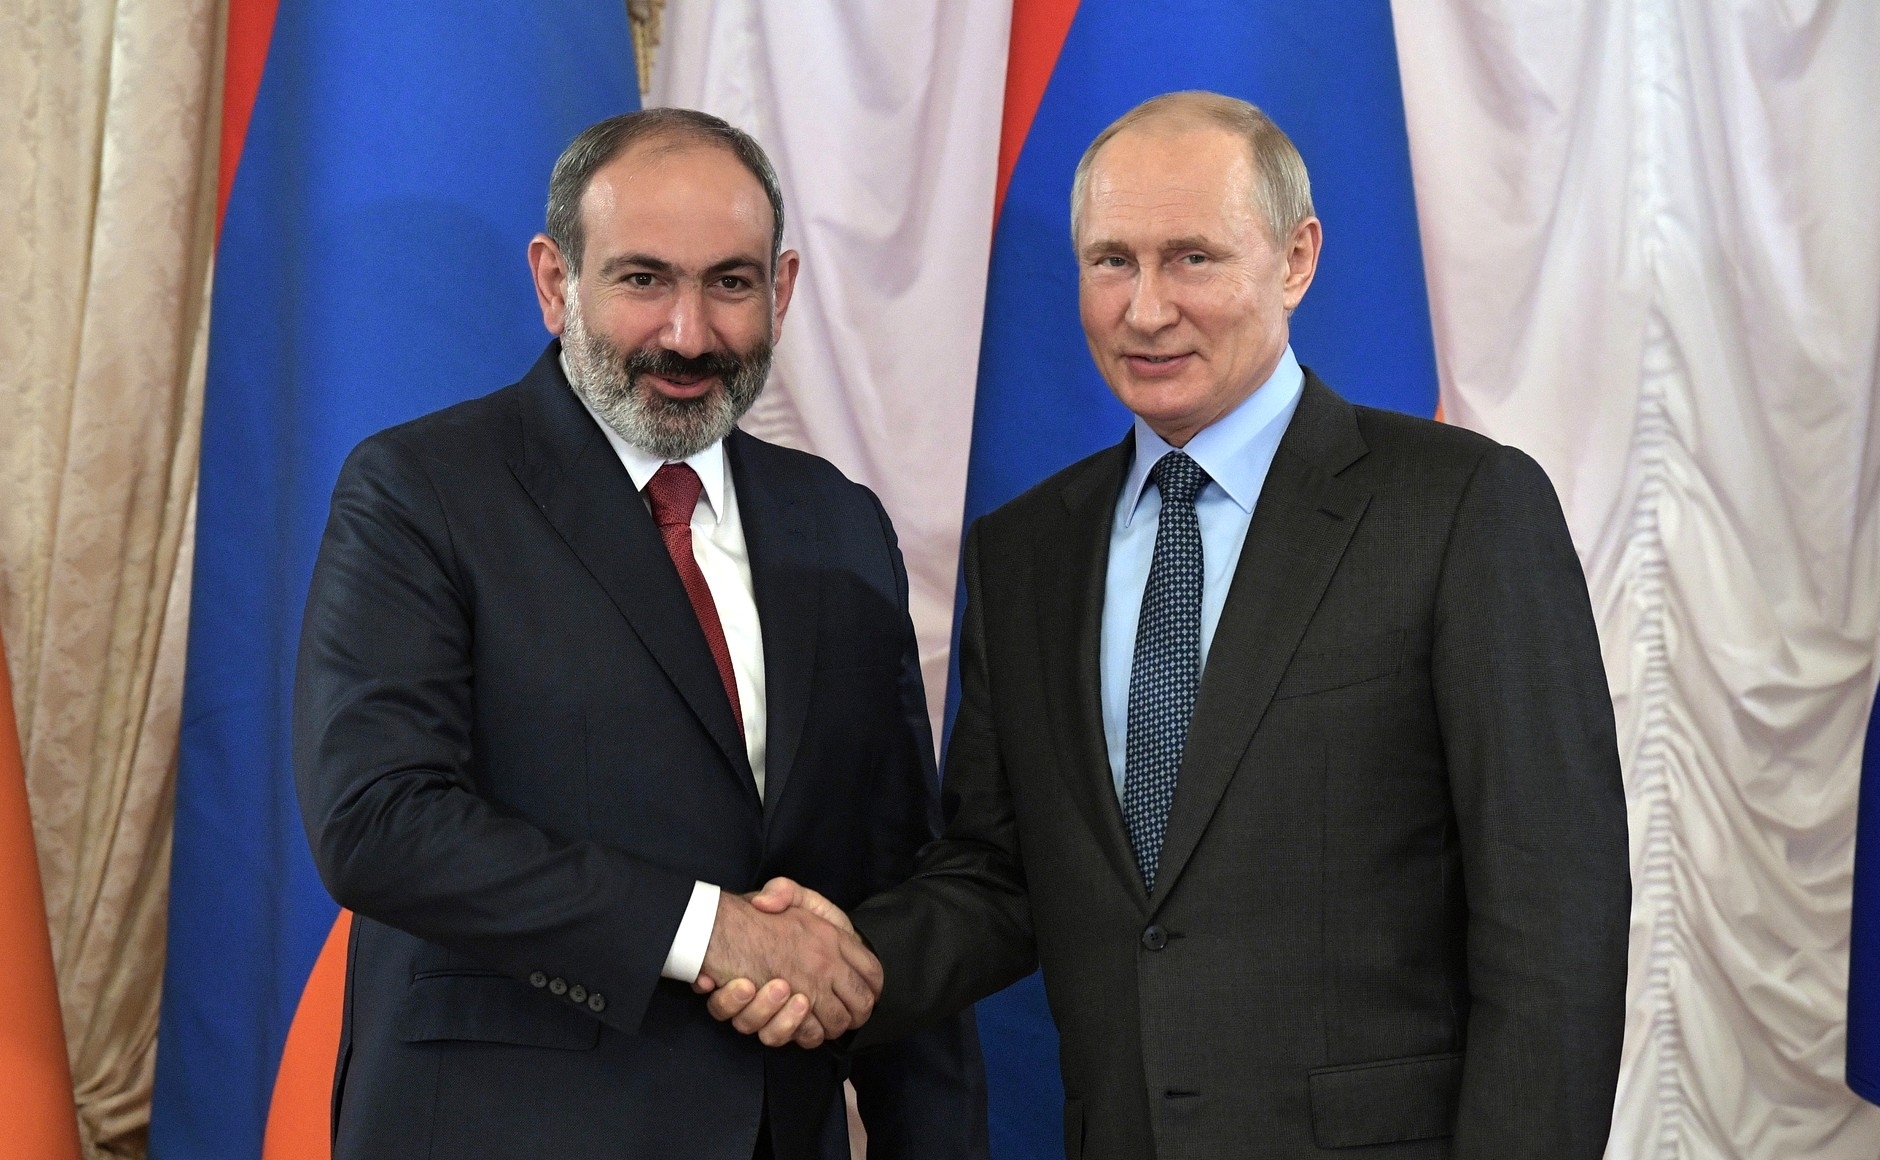 В Ереване состоится встреча Владимира Путина с Николом Пашиняном - Кремль